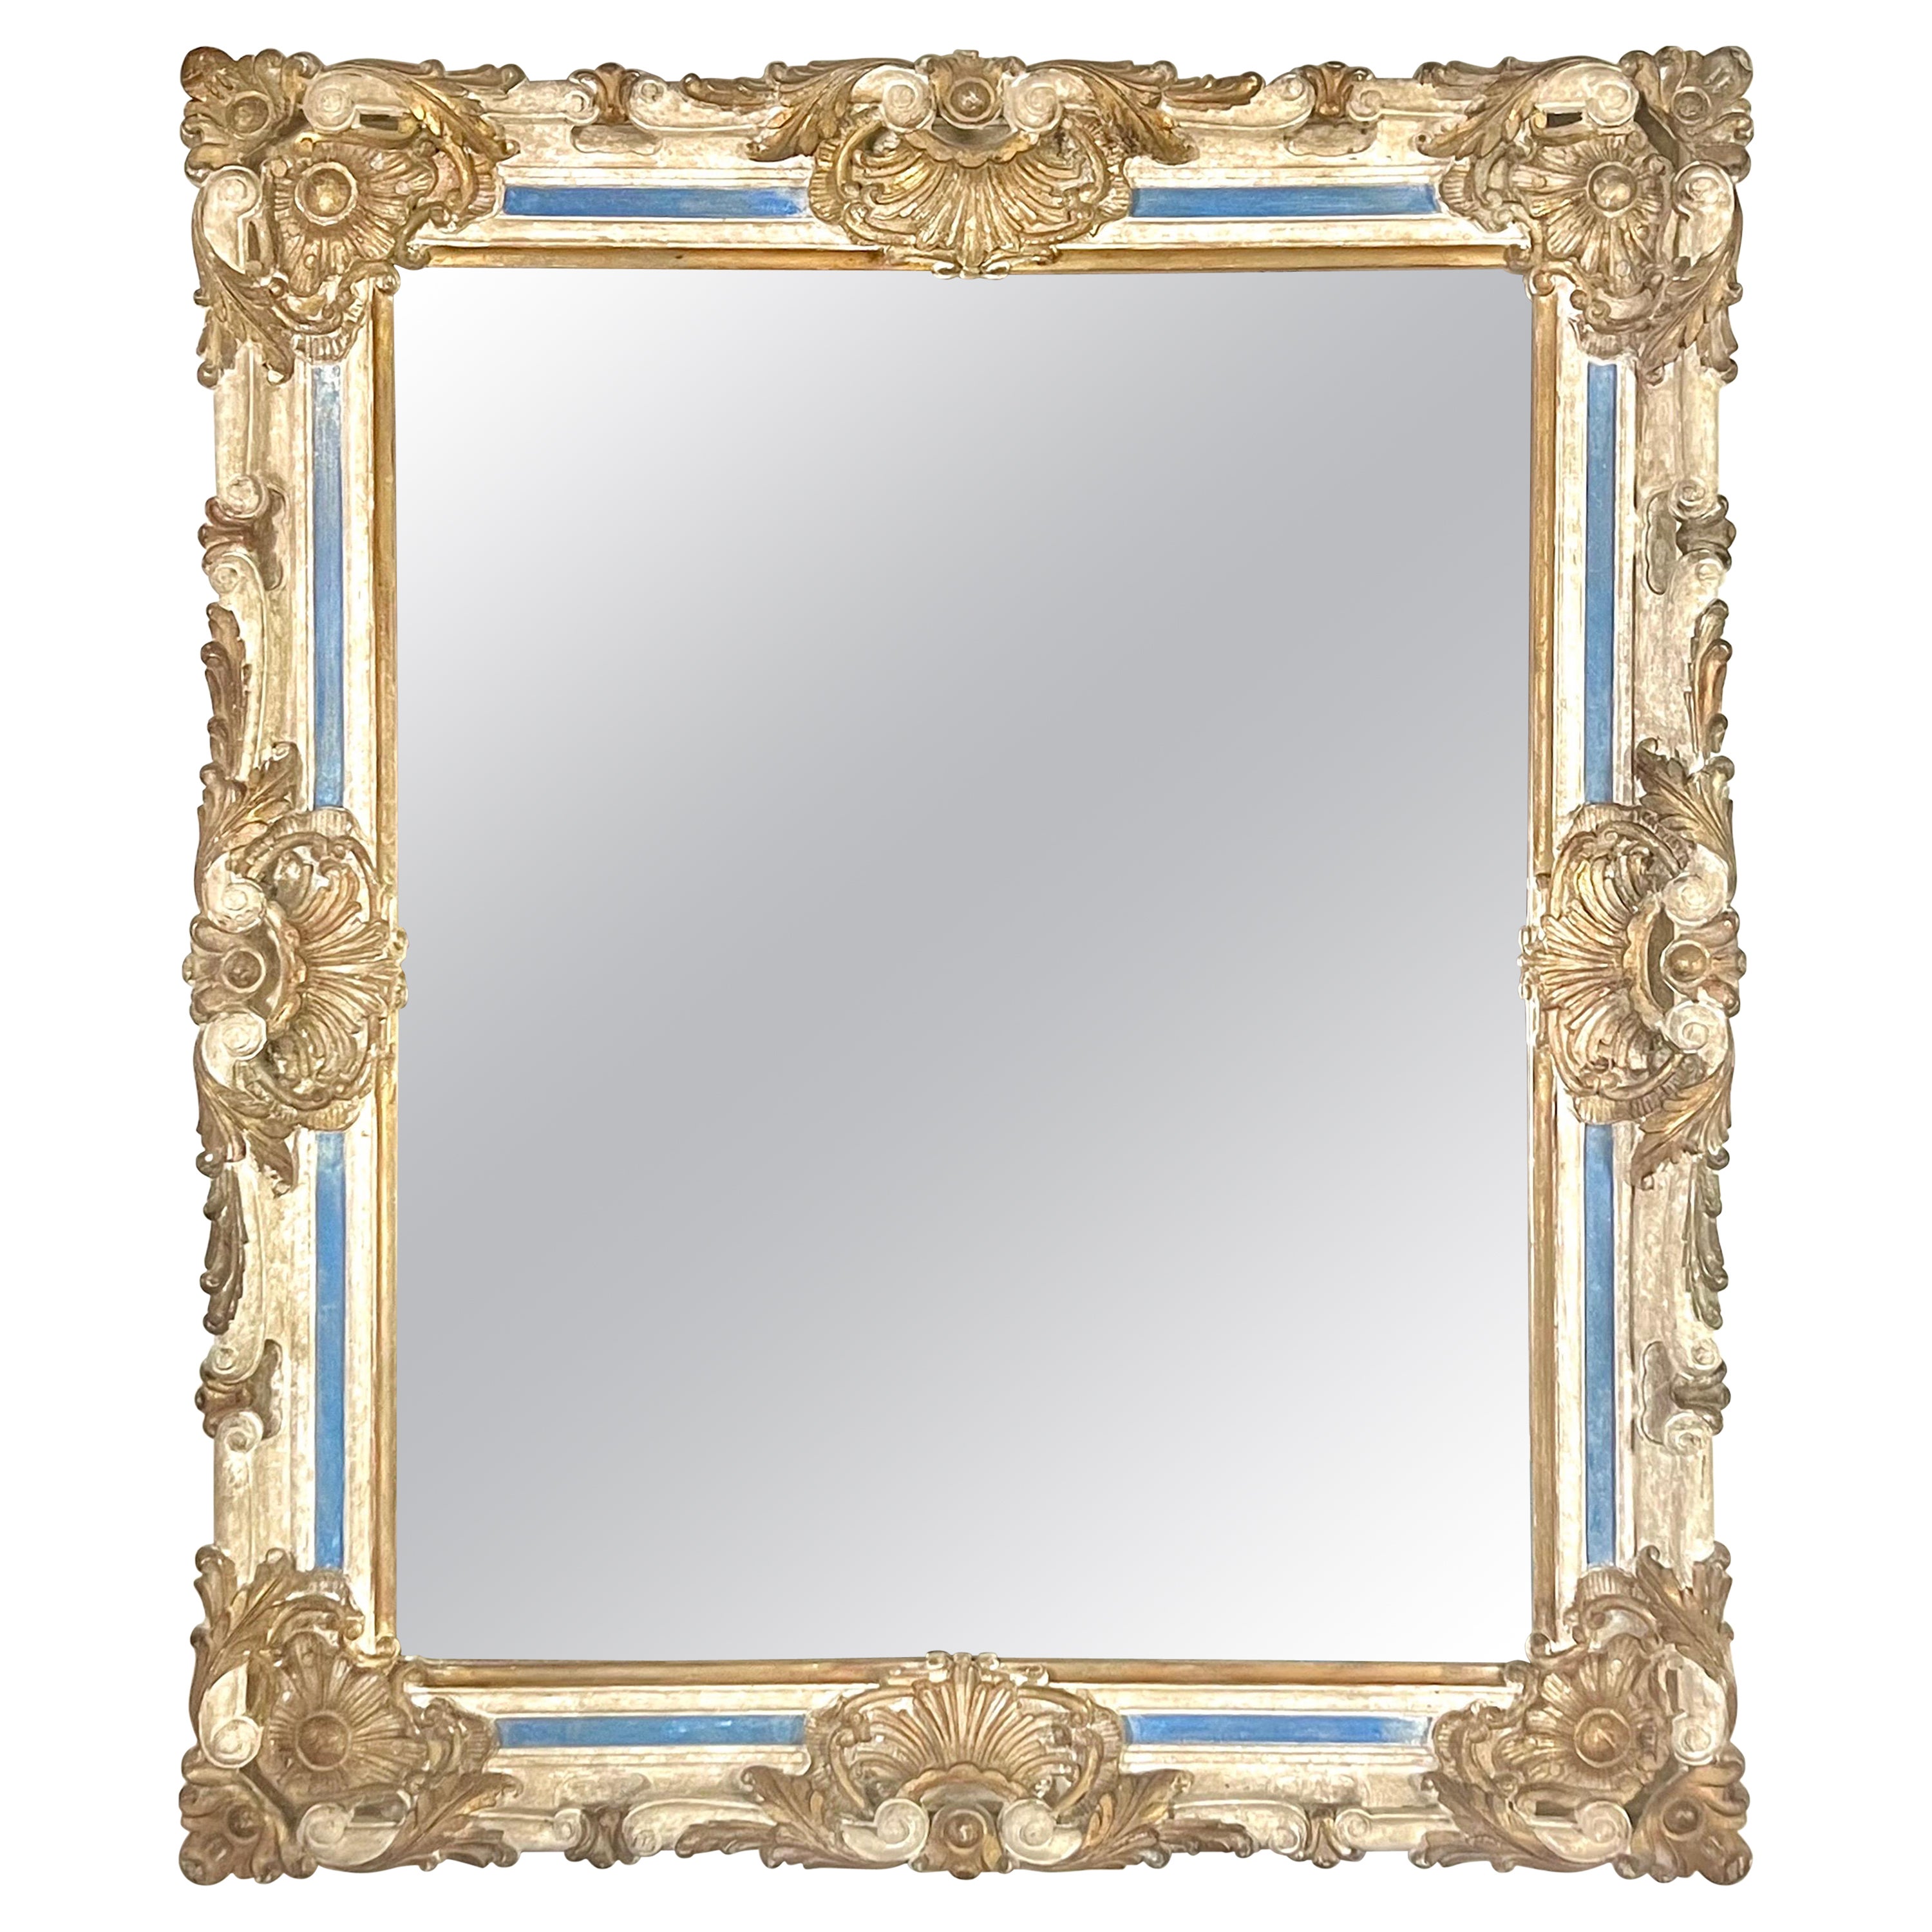 Monumental miroir baroque français peint et doré à la feuille vers les années 1940